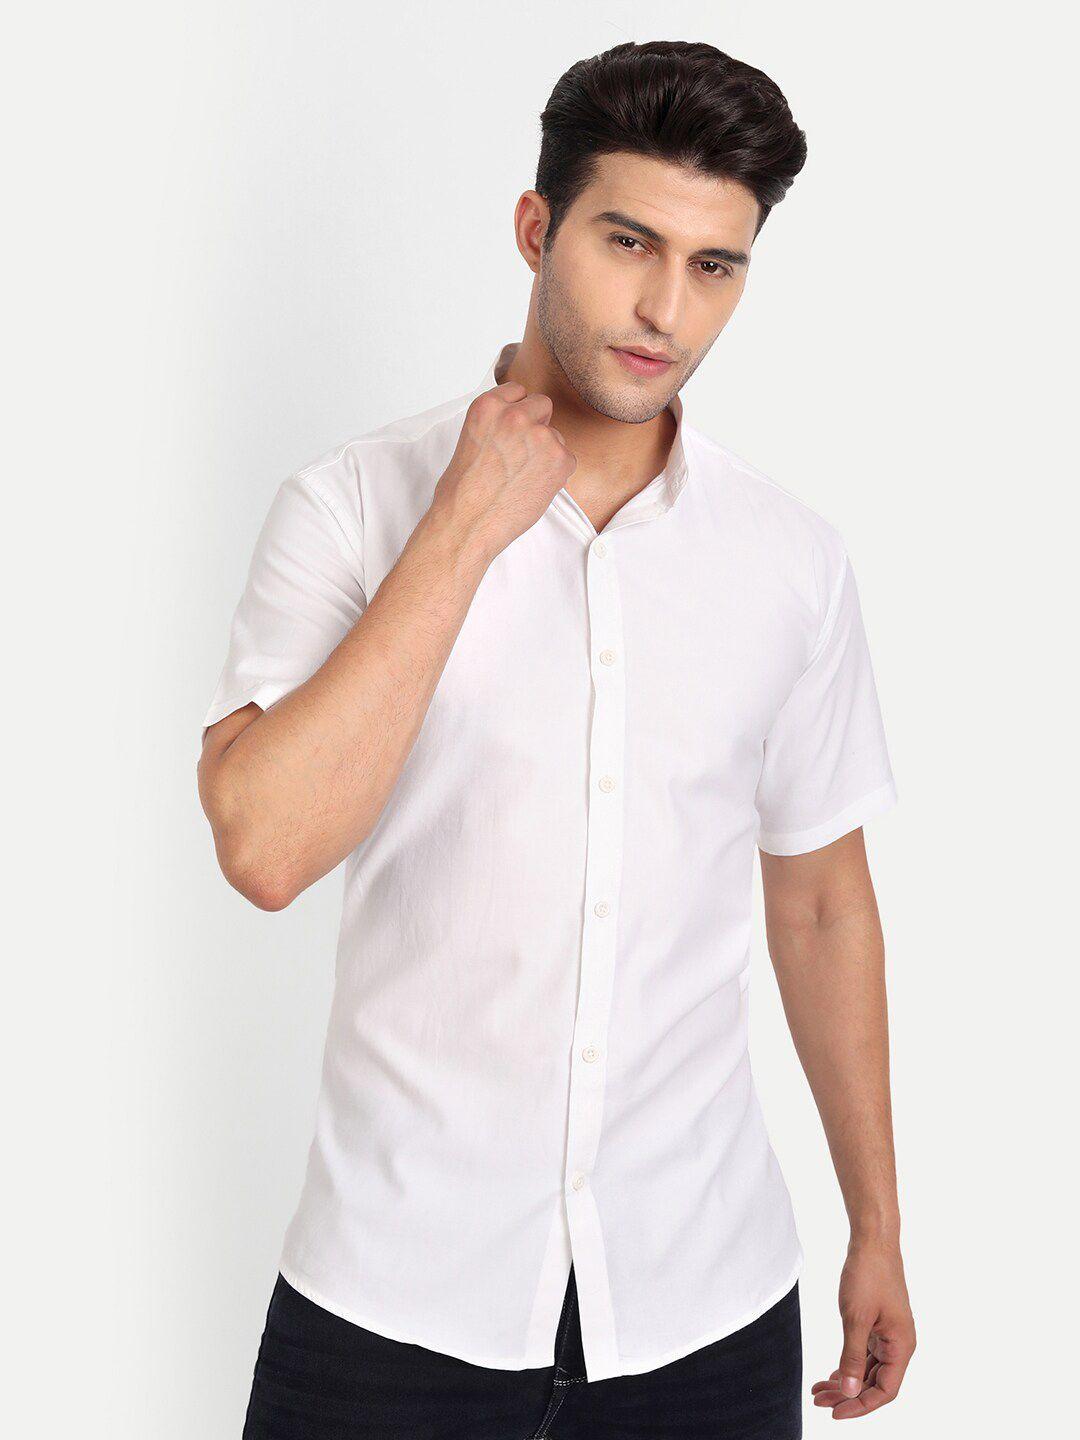 vida loca india slim fit mandarin collar cotton opaque casual shirt